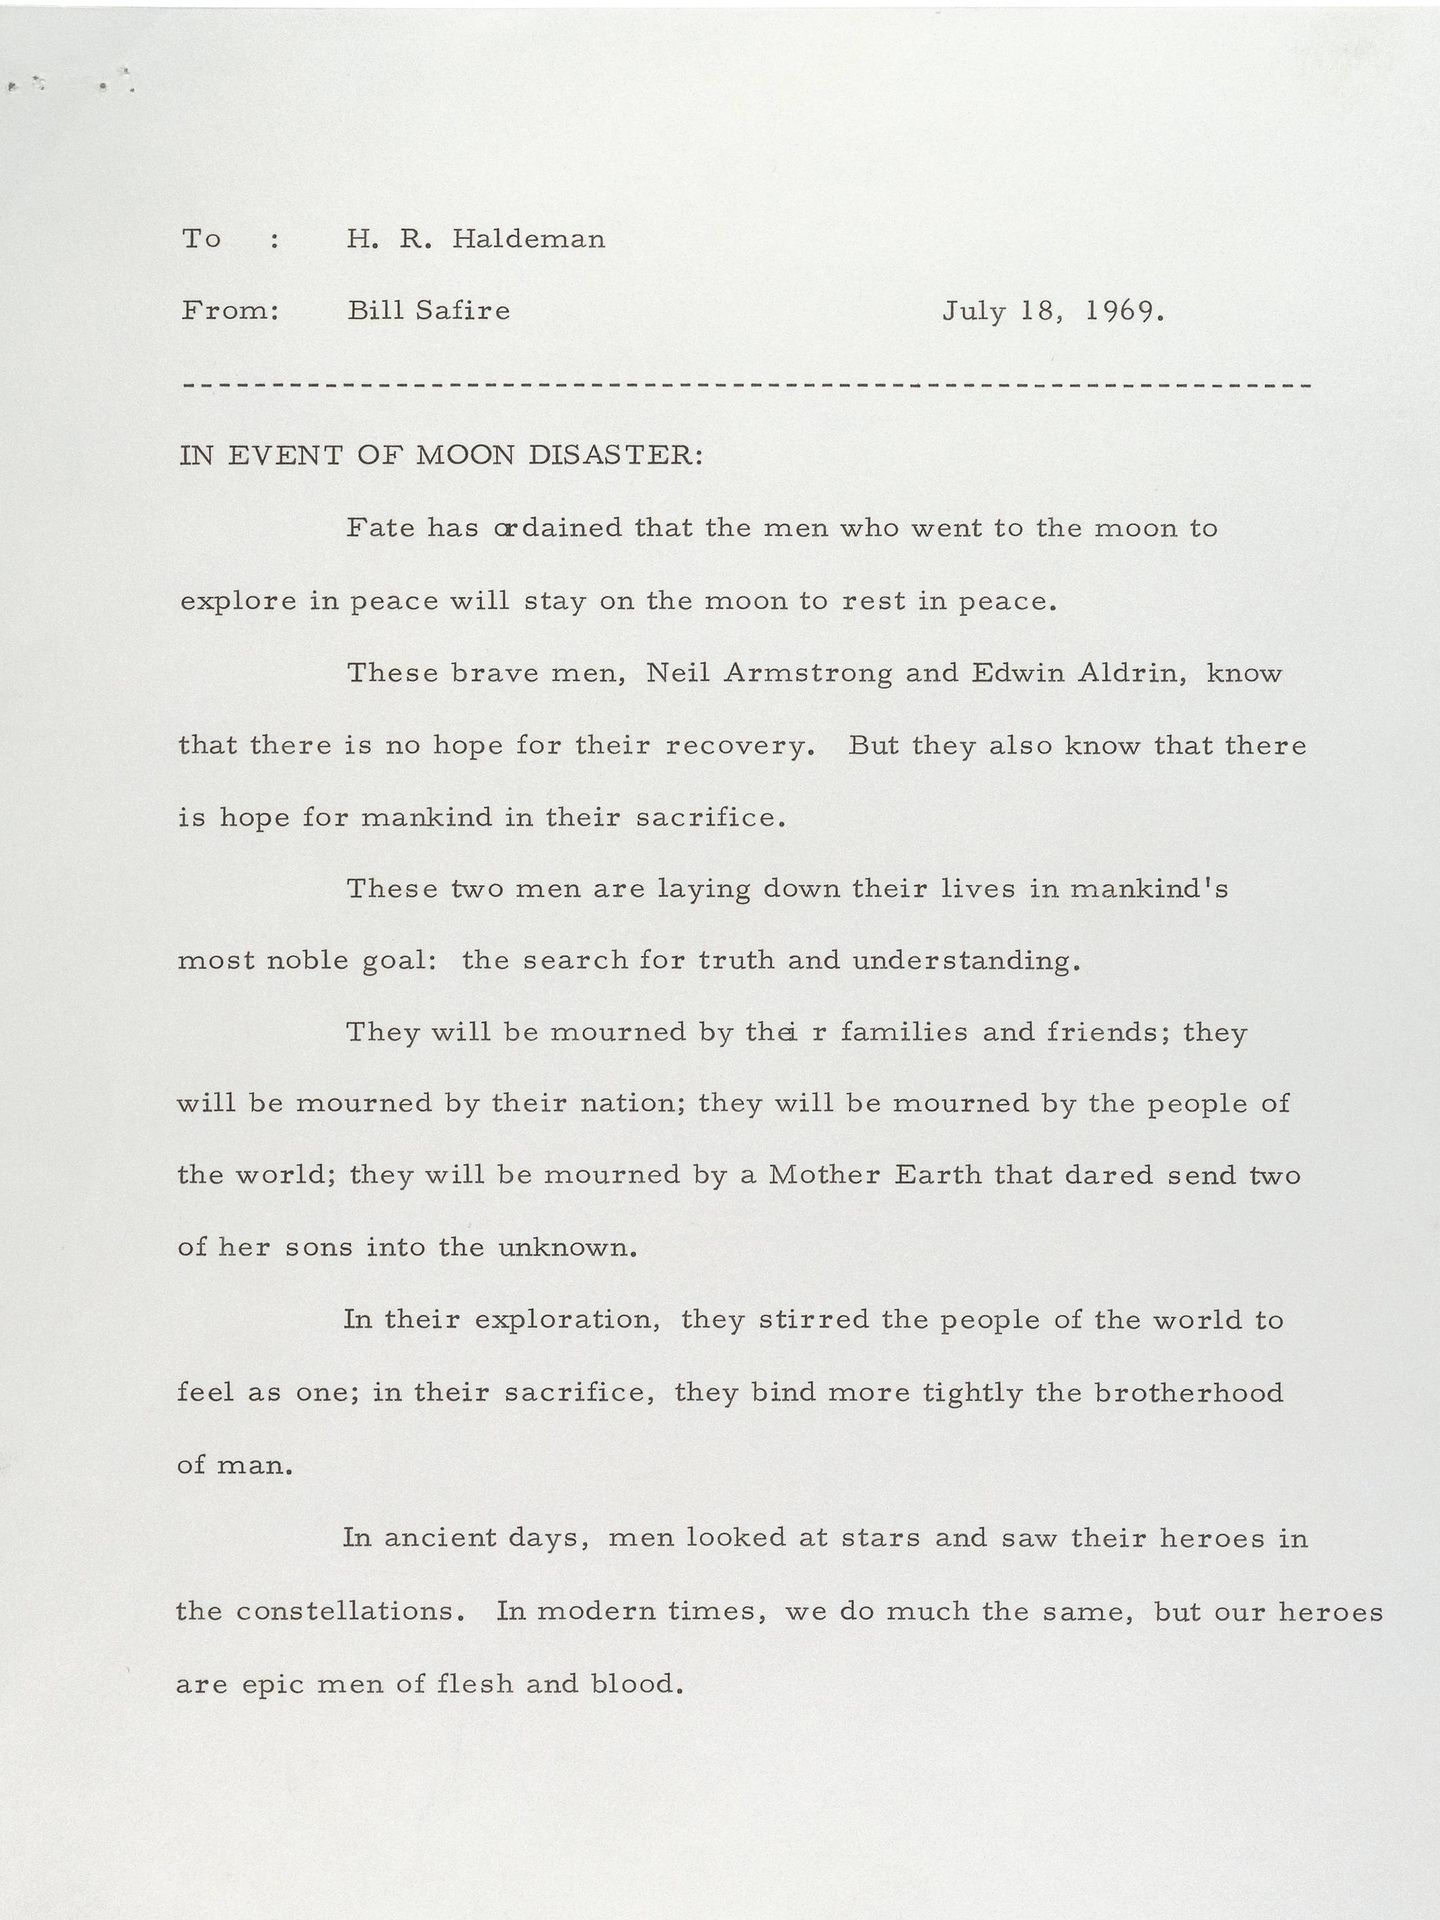 El anuncio preparado para Nixon en caso de que Armstrong y Aldrin hubieran muerto en la Luna